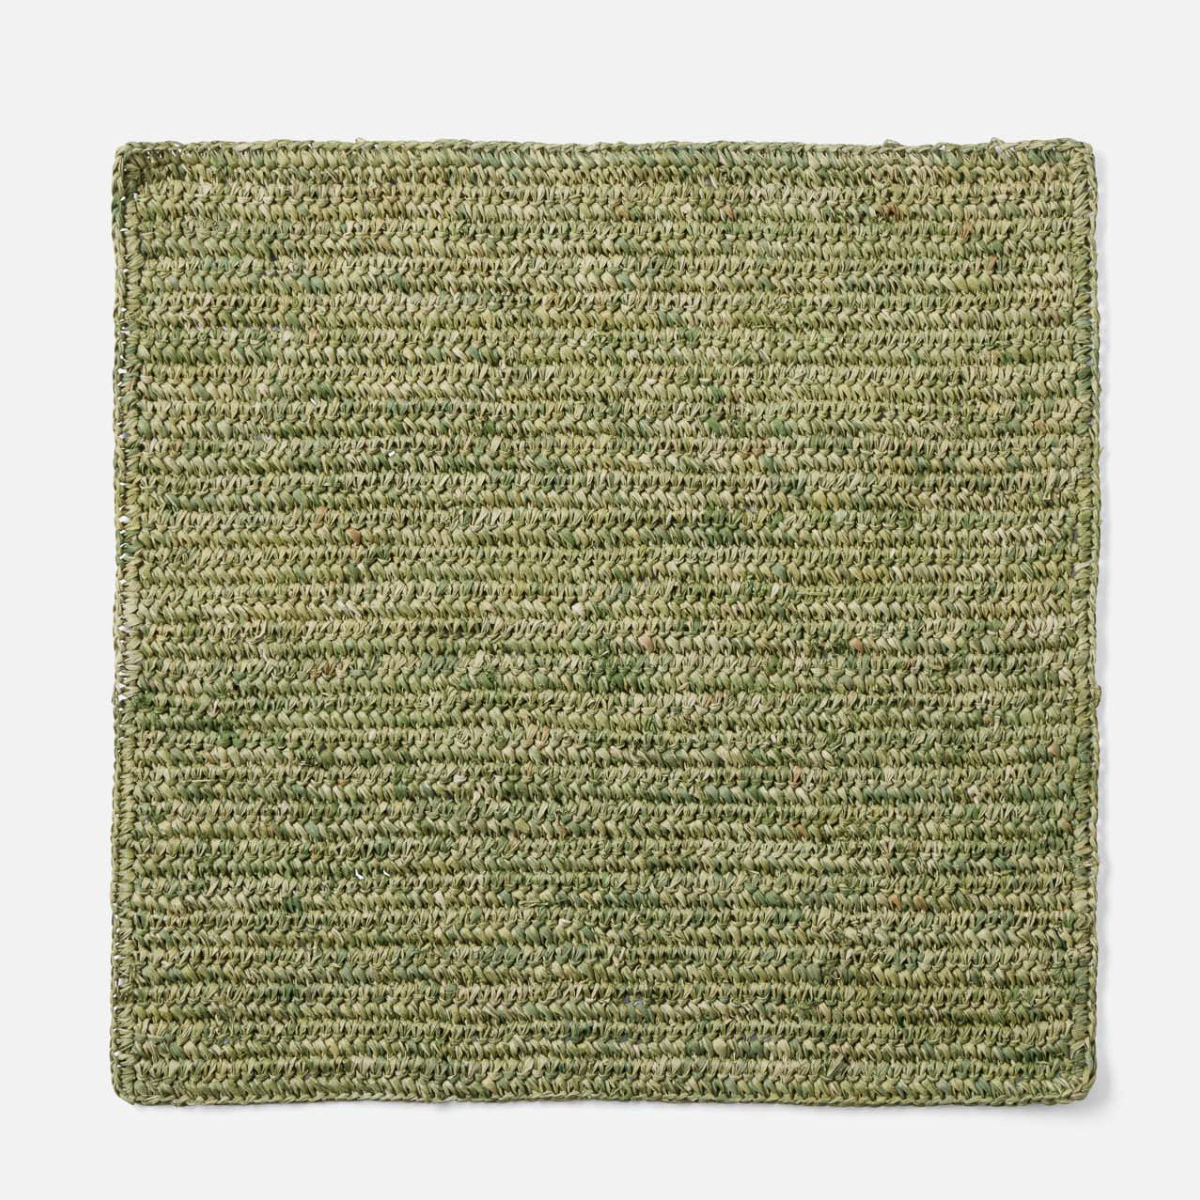 Moss Green Placemat Crochet, Set of 4